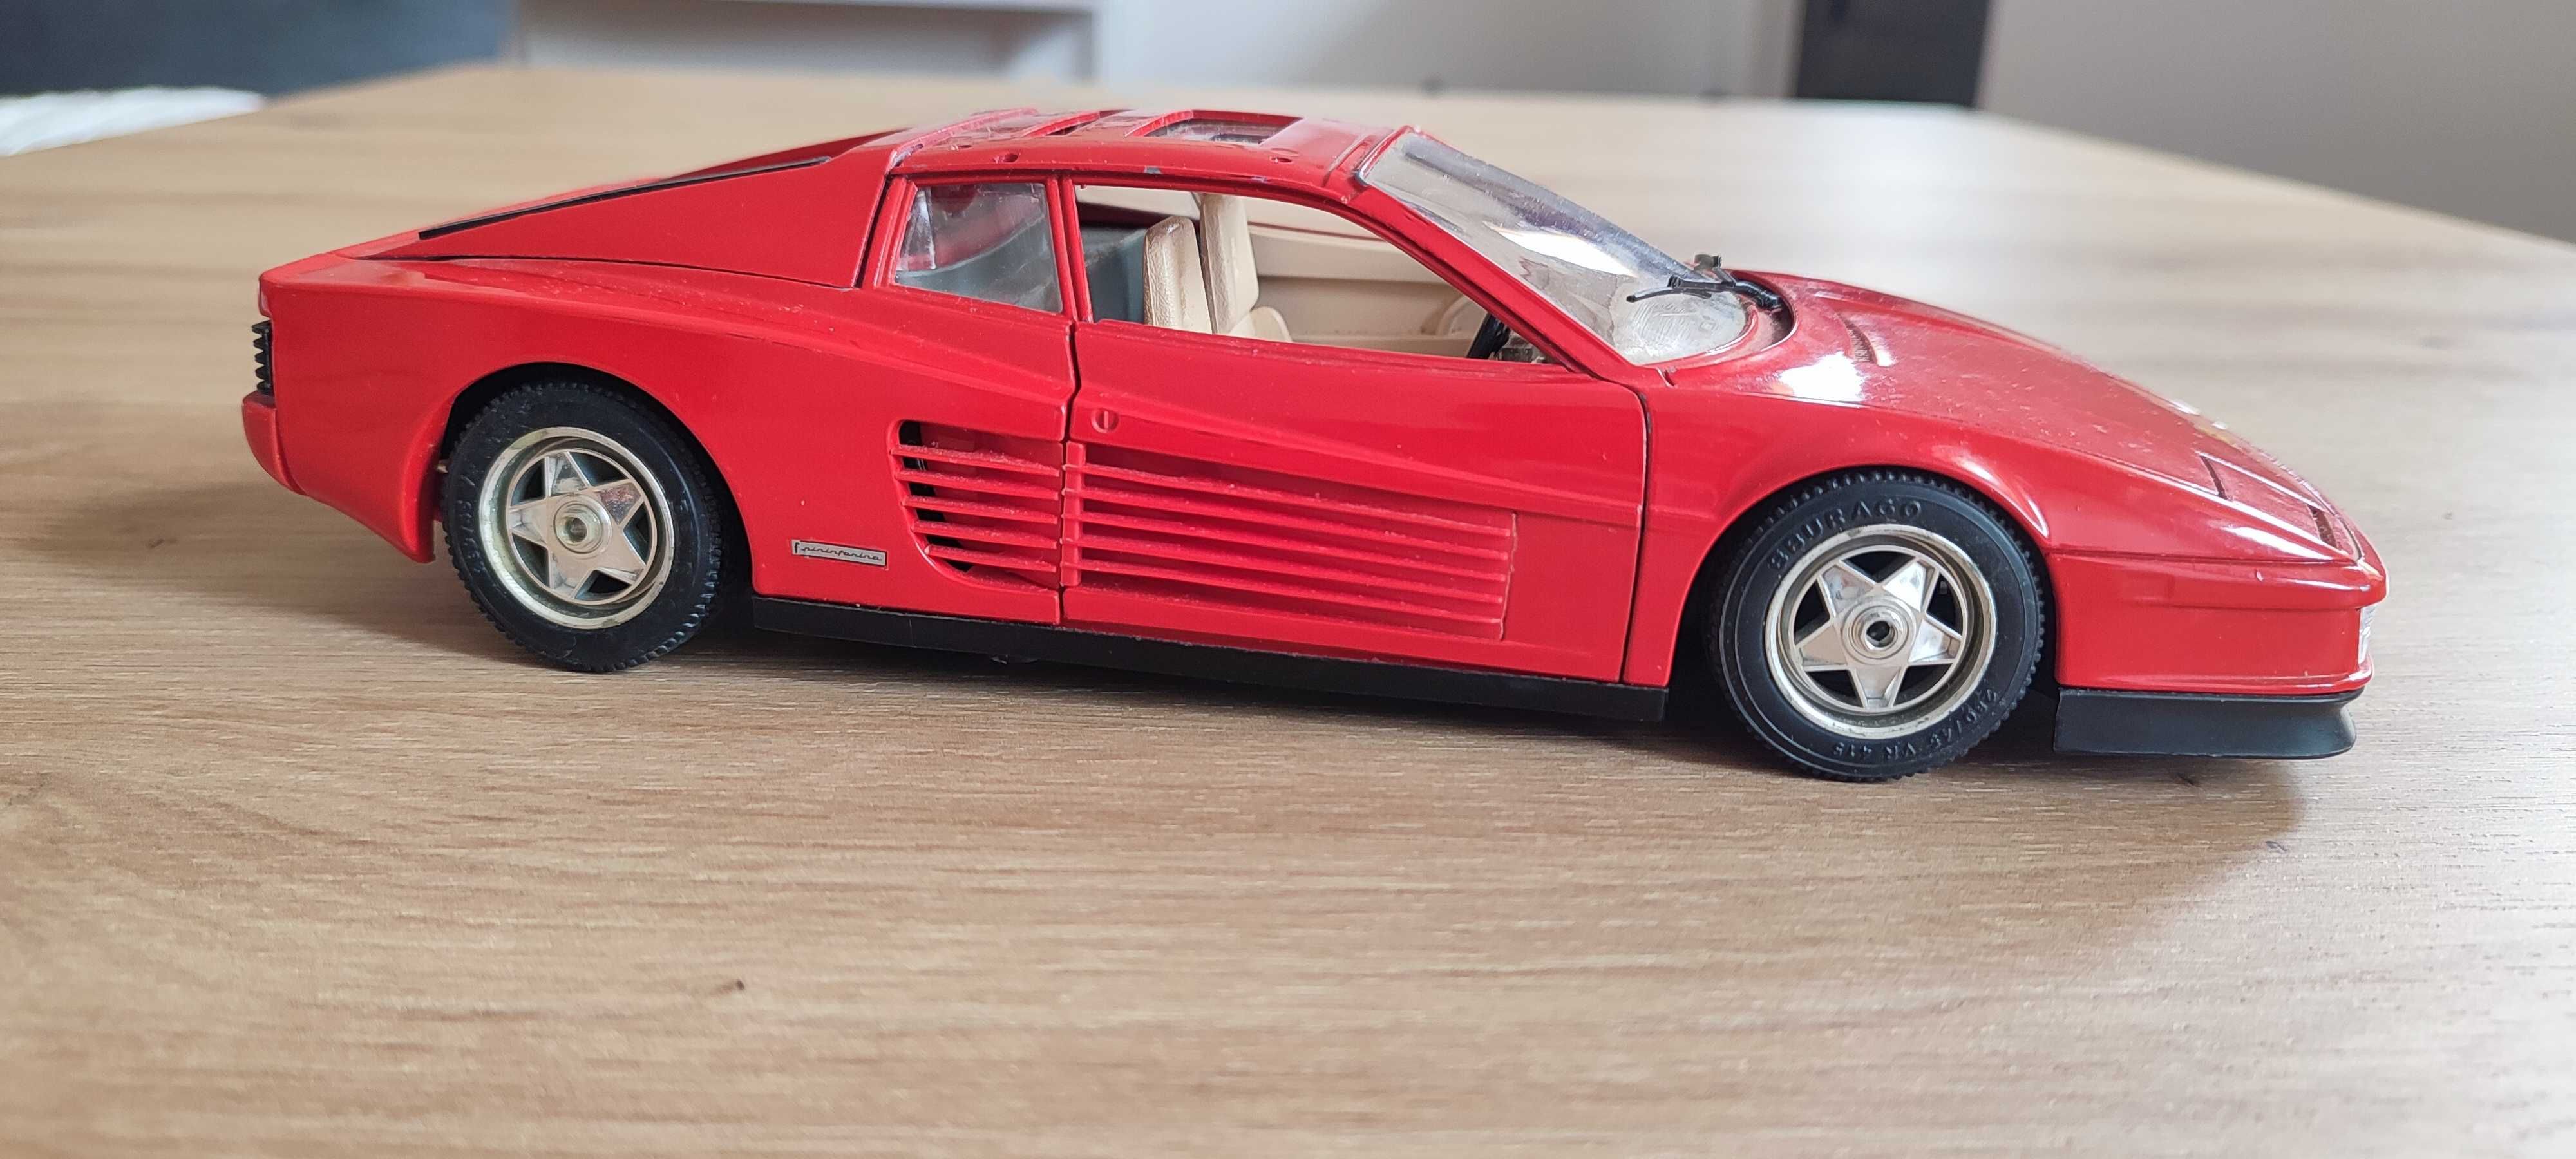 Ferrari Testarossa 1984 escala 1/18